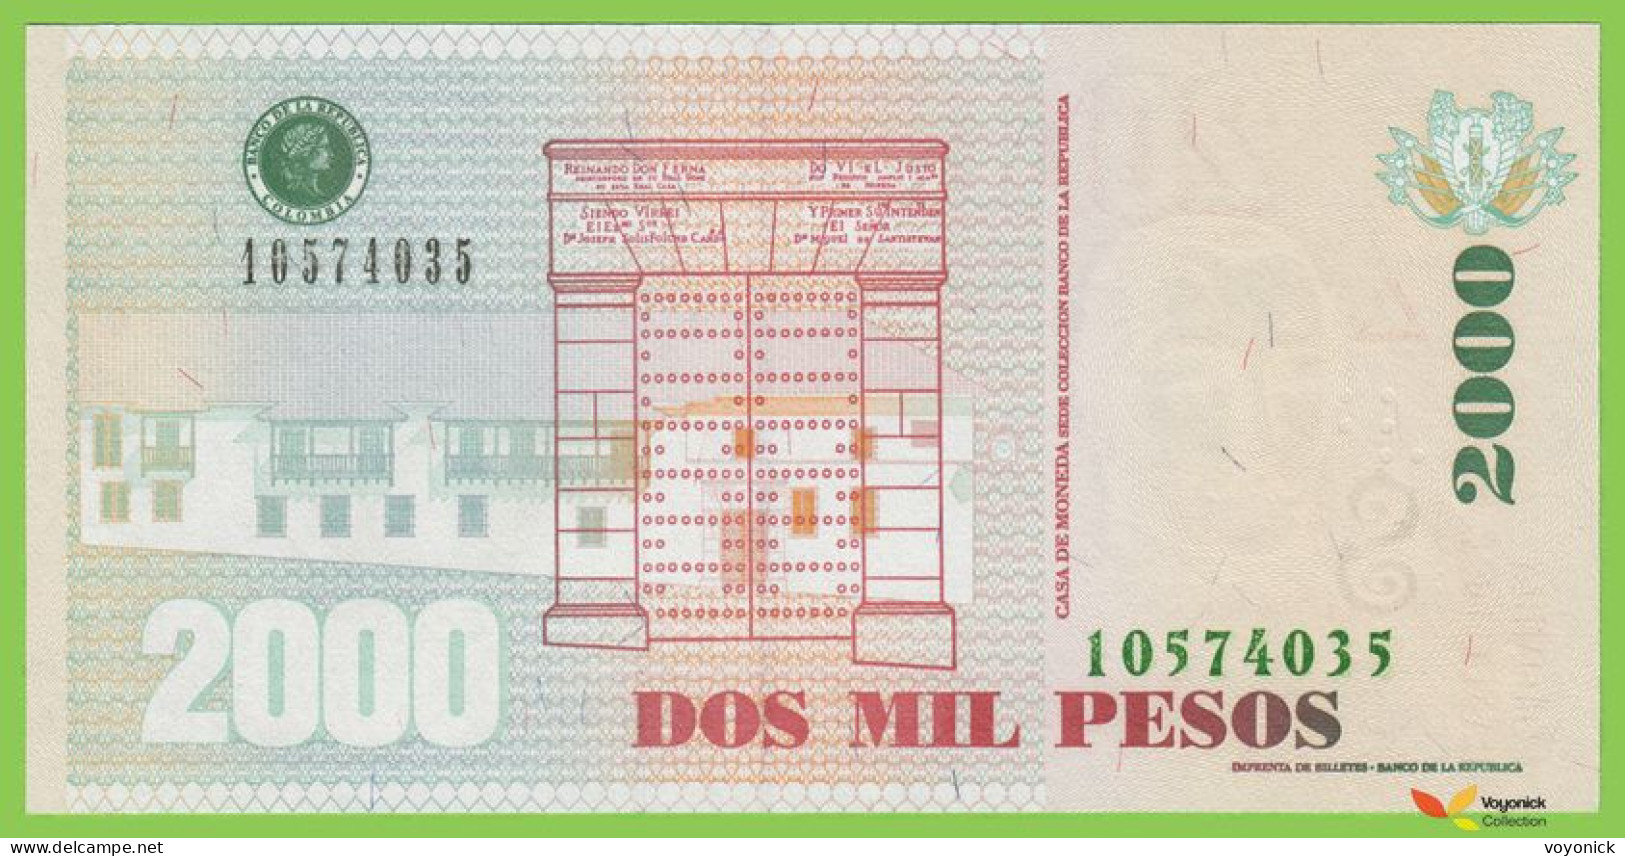 Voyo COLOMBIA 2000 Pesos 2014(2015) P457y B988y UNC - Kolumbien